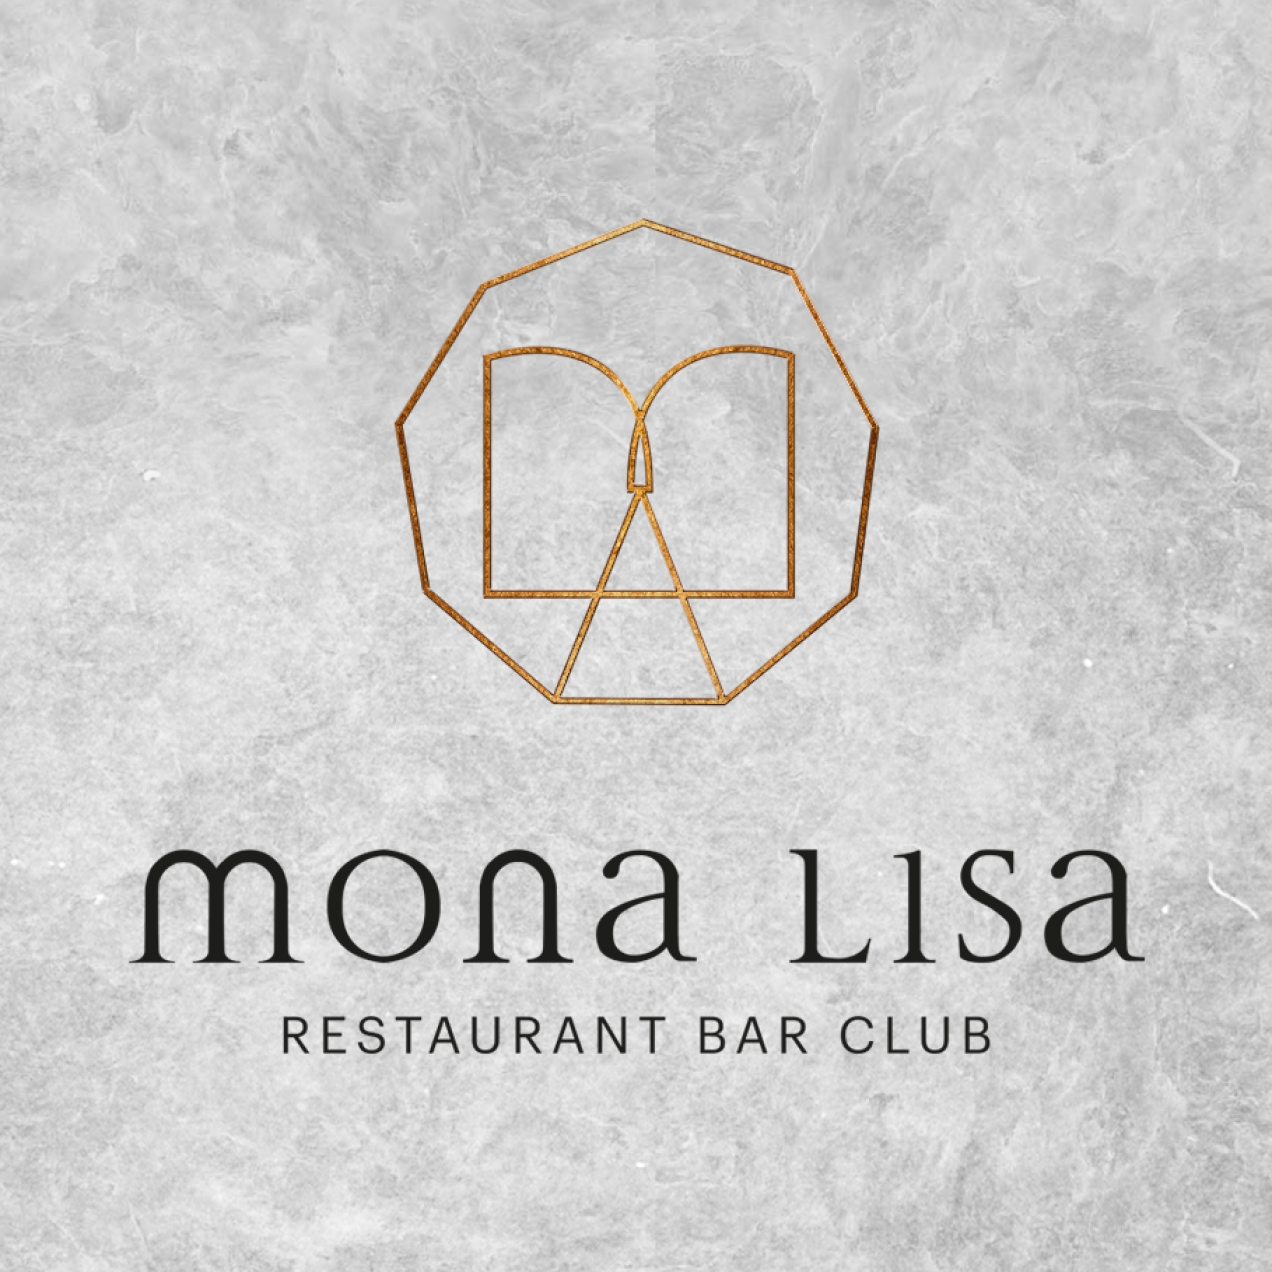 Le Mona Lisa, un nouvel espace bar, restaurant et clubbing près du Louvre